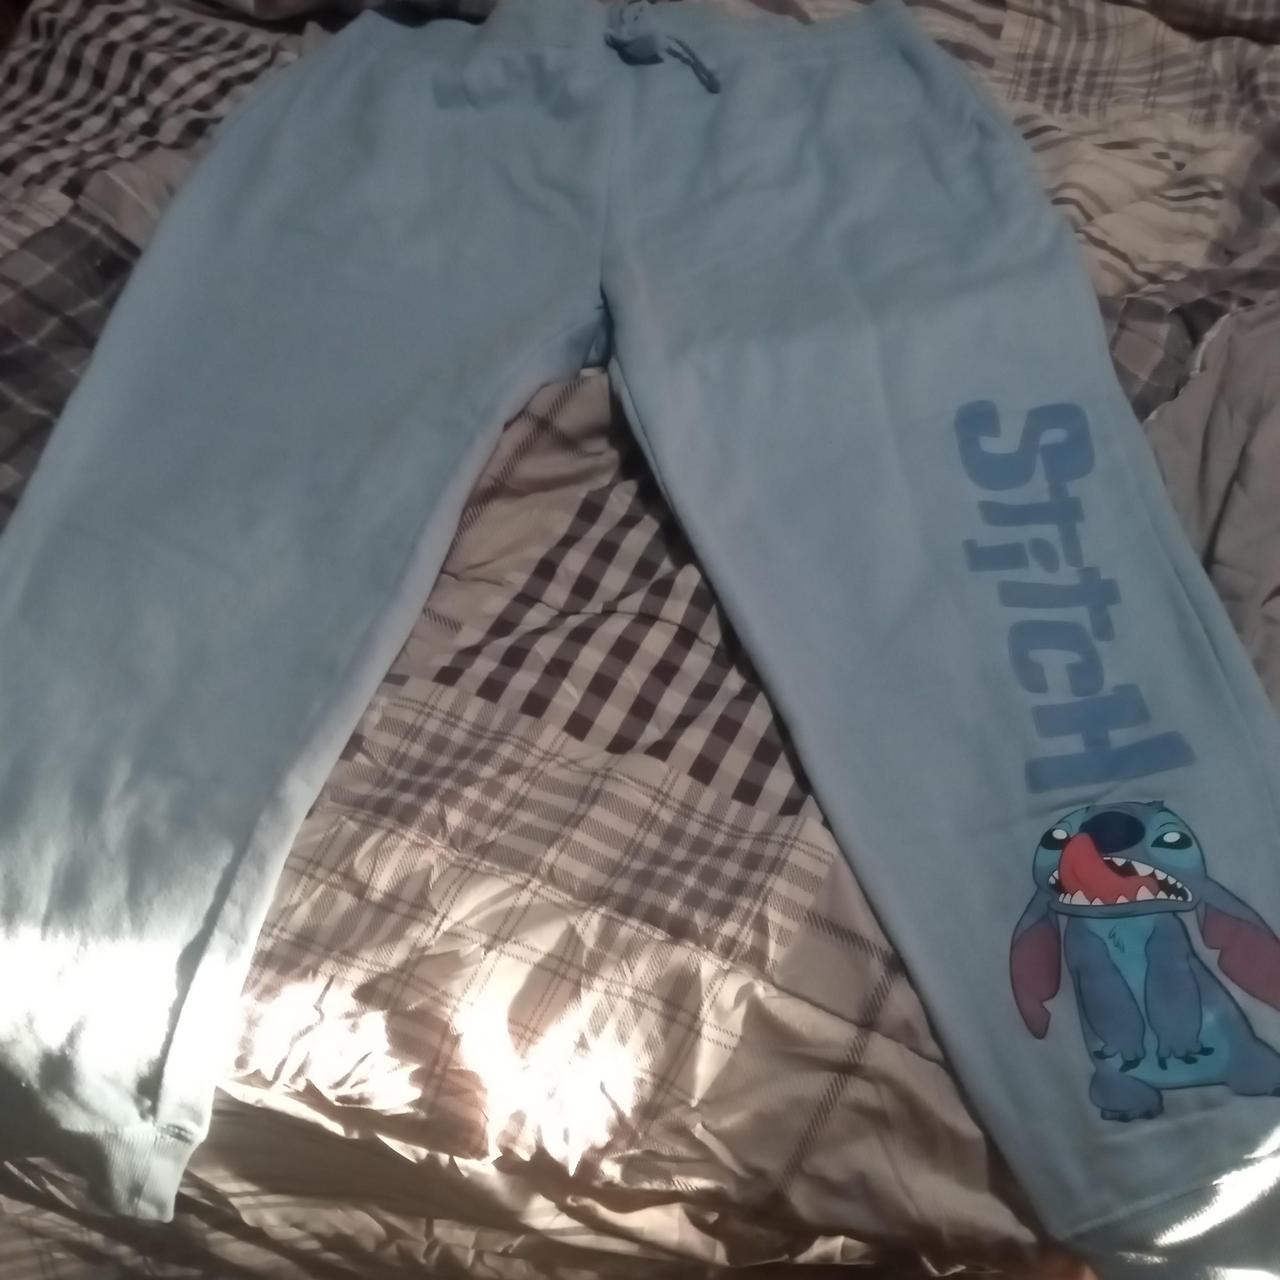 Stitch sweatpants by Disney. Color is light - Depop